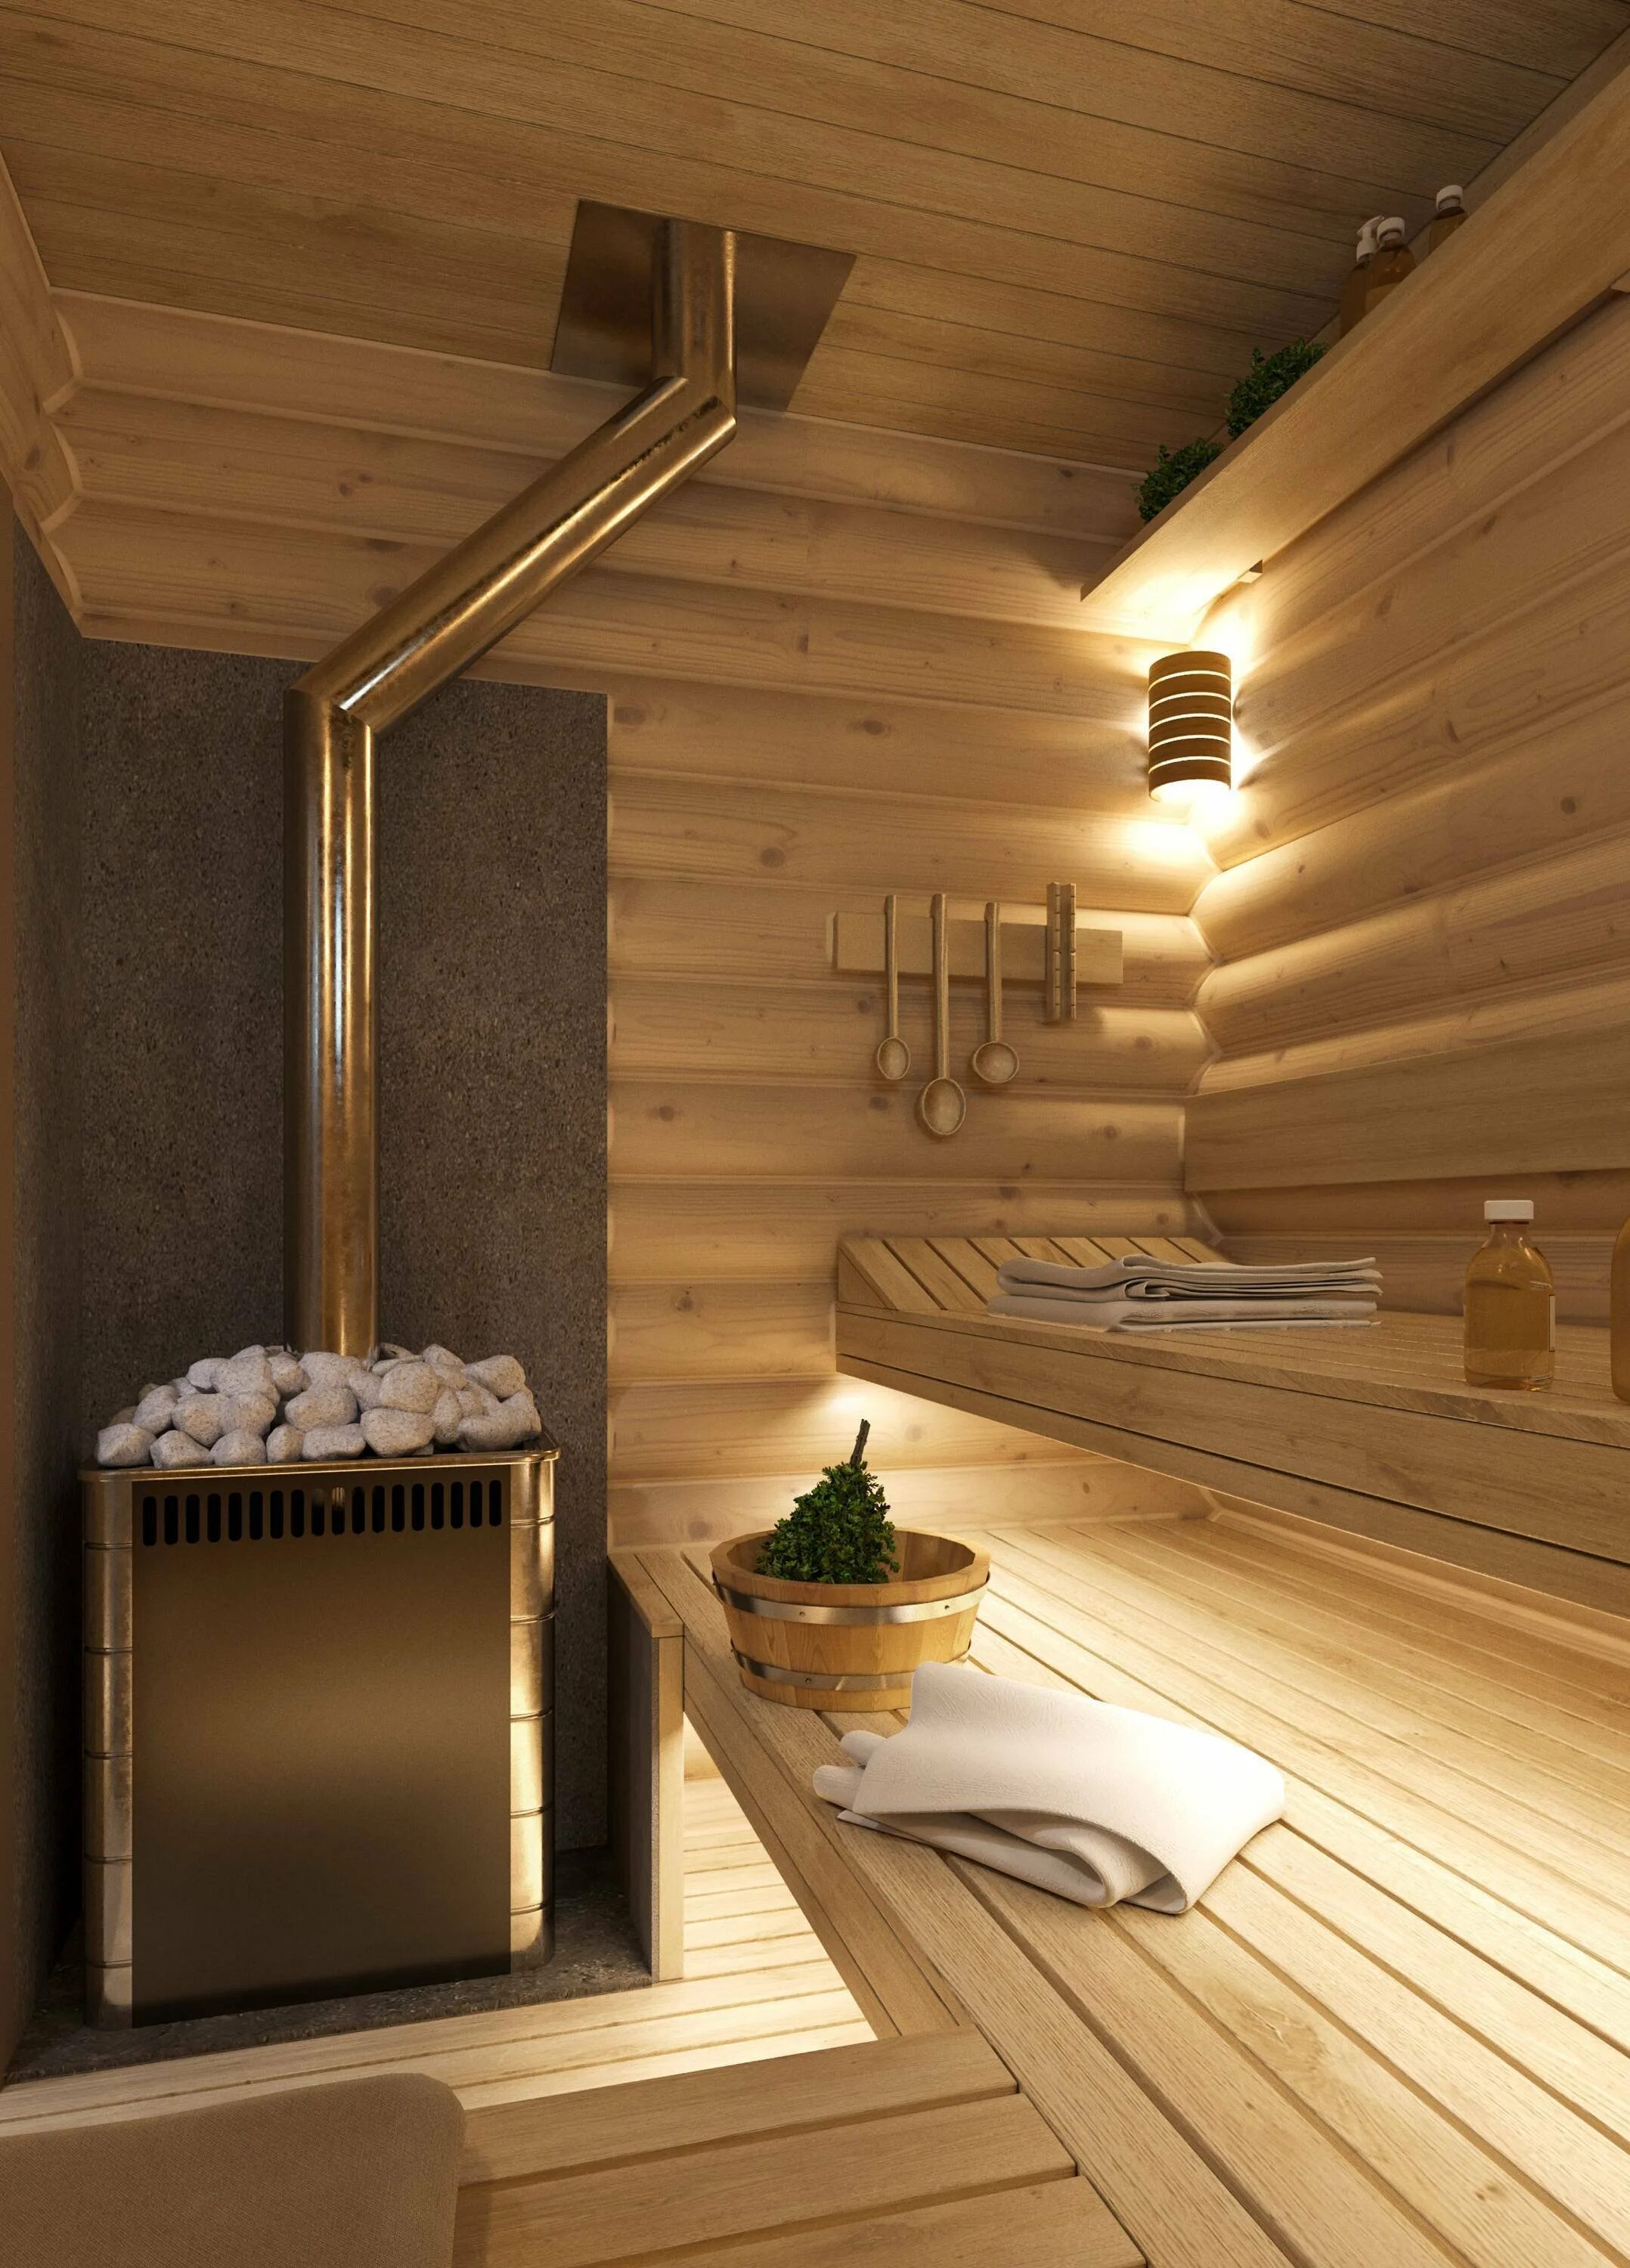 Показать картинки бани. Interyer banya баня интерьер. Внутренняя отделка бани. Баня внутри. Отделка бани внутри.